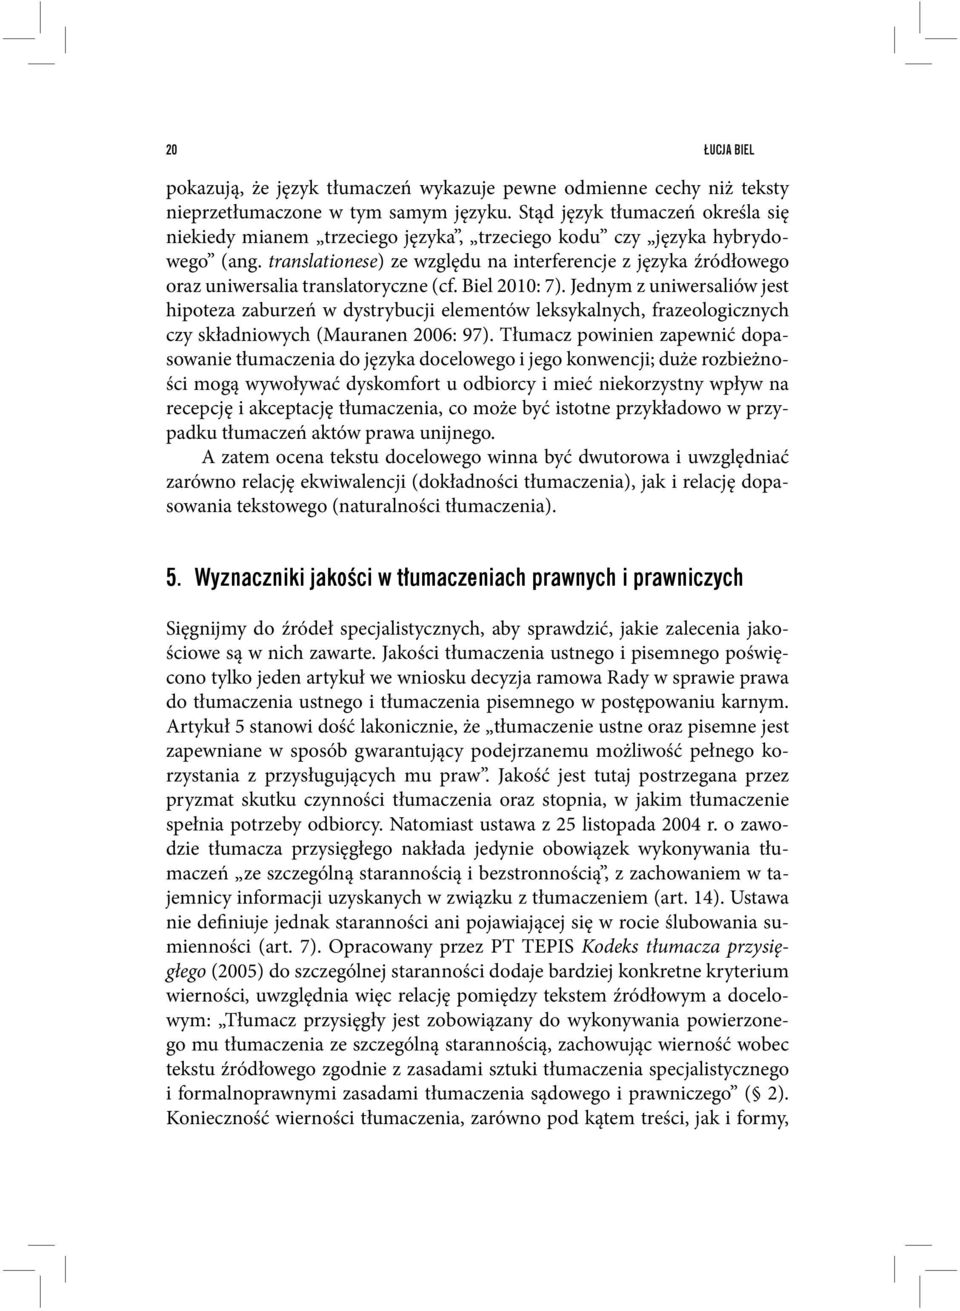 translationese) ze względu na interferencje z języka źródłowego oraz uniwersalia translatoryczne (cf. Biel 2010: 7).